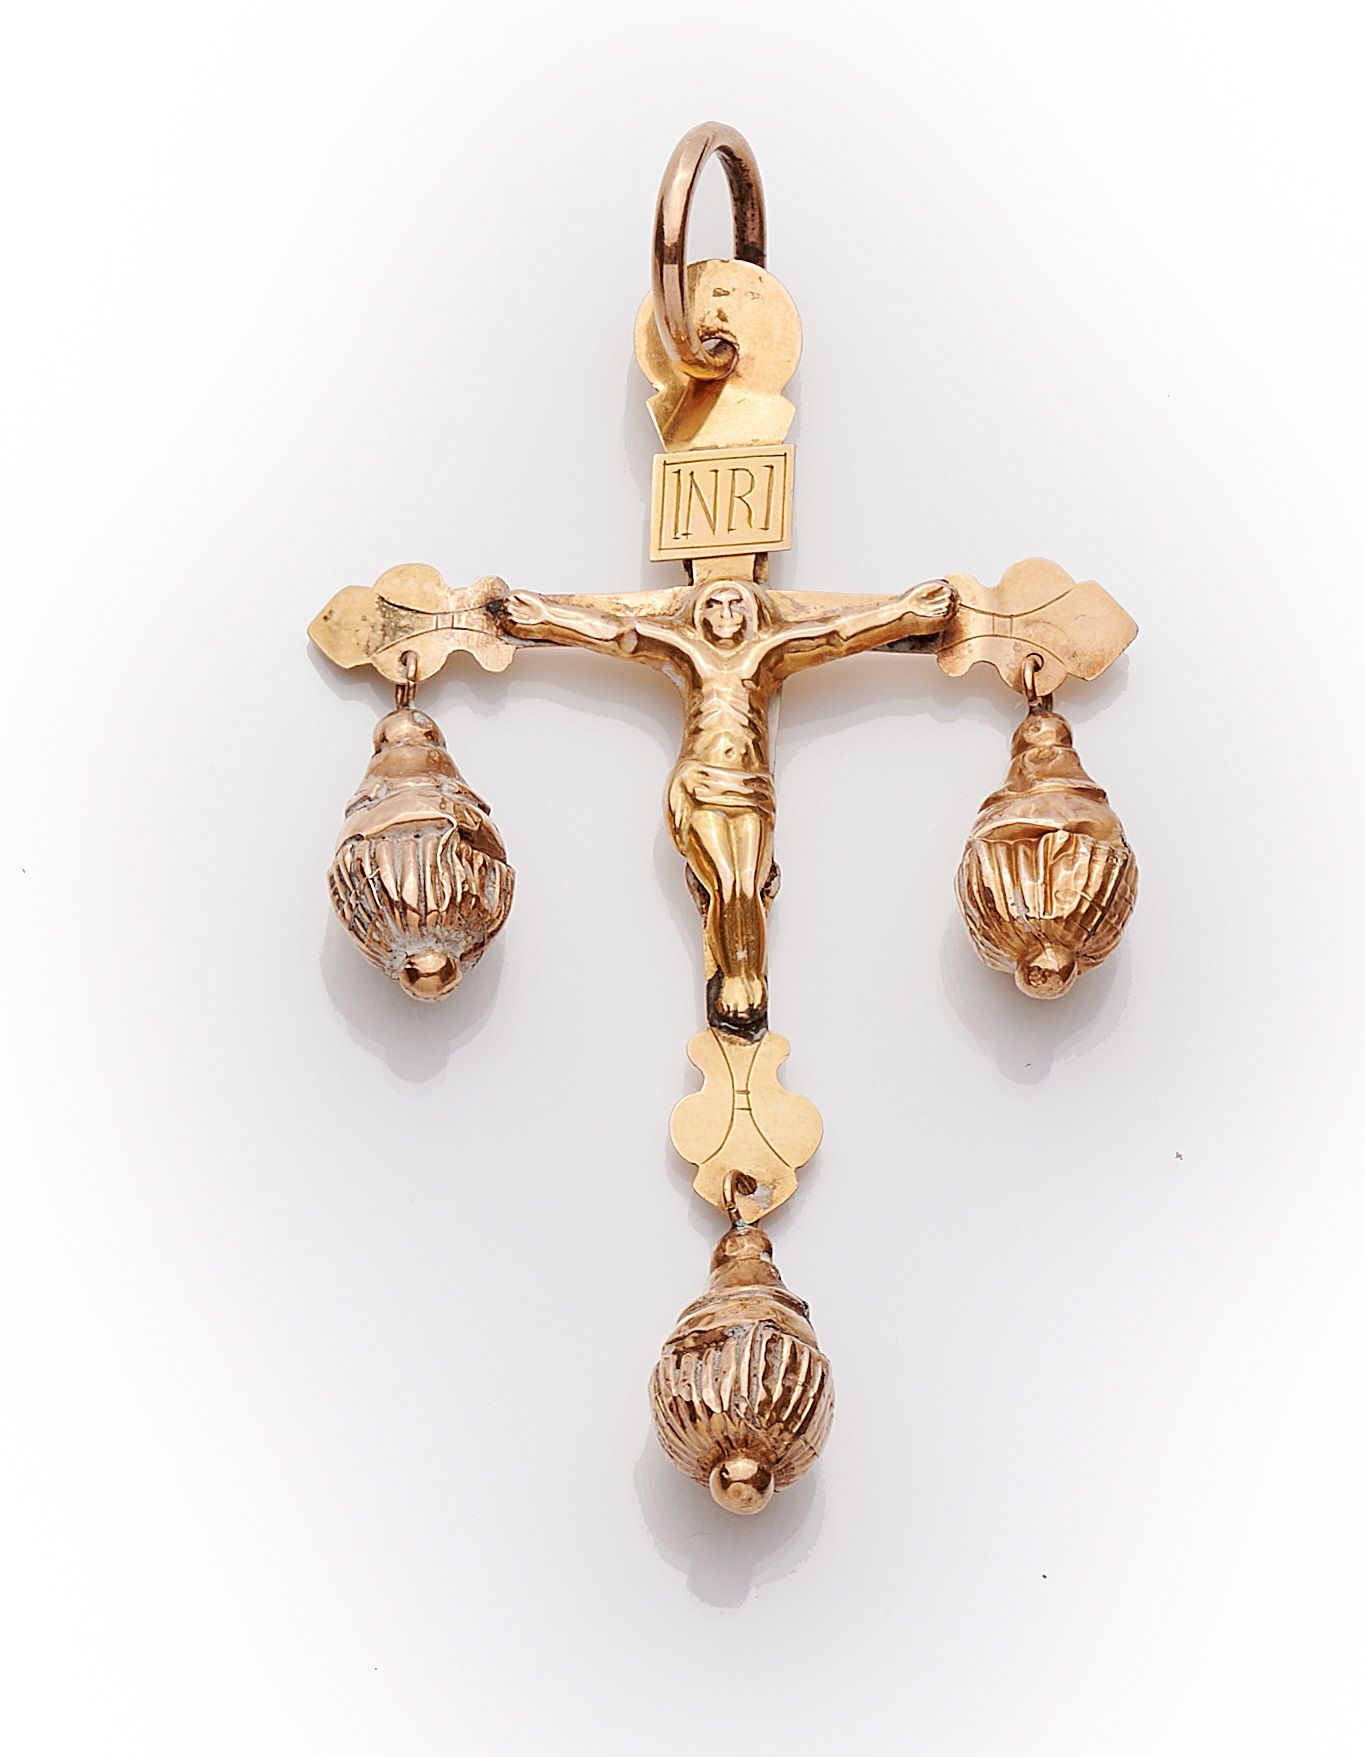 Null 勒普伊的黄金十字架，双面基督和圣母，装饰有三个凹槽吊坠。
标有马头，为1838年至1919年期间的省份。
意外的金属搭扣。
高度：10厘米
毛重：7.&hellip;